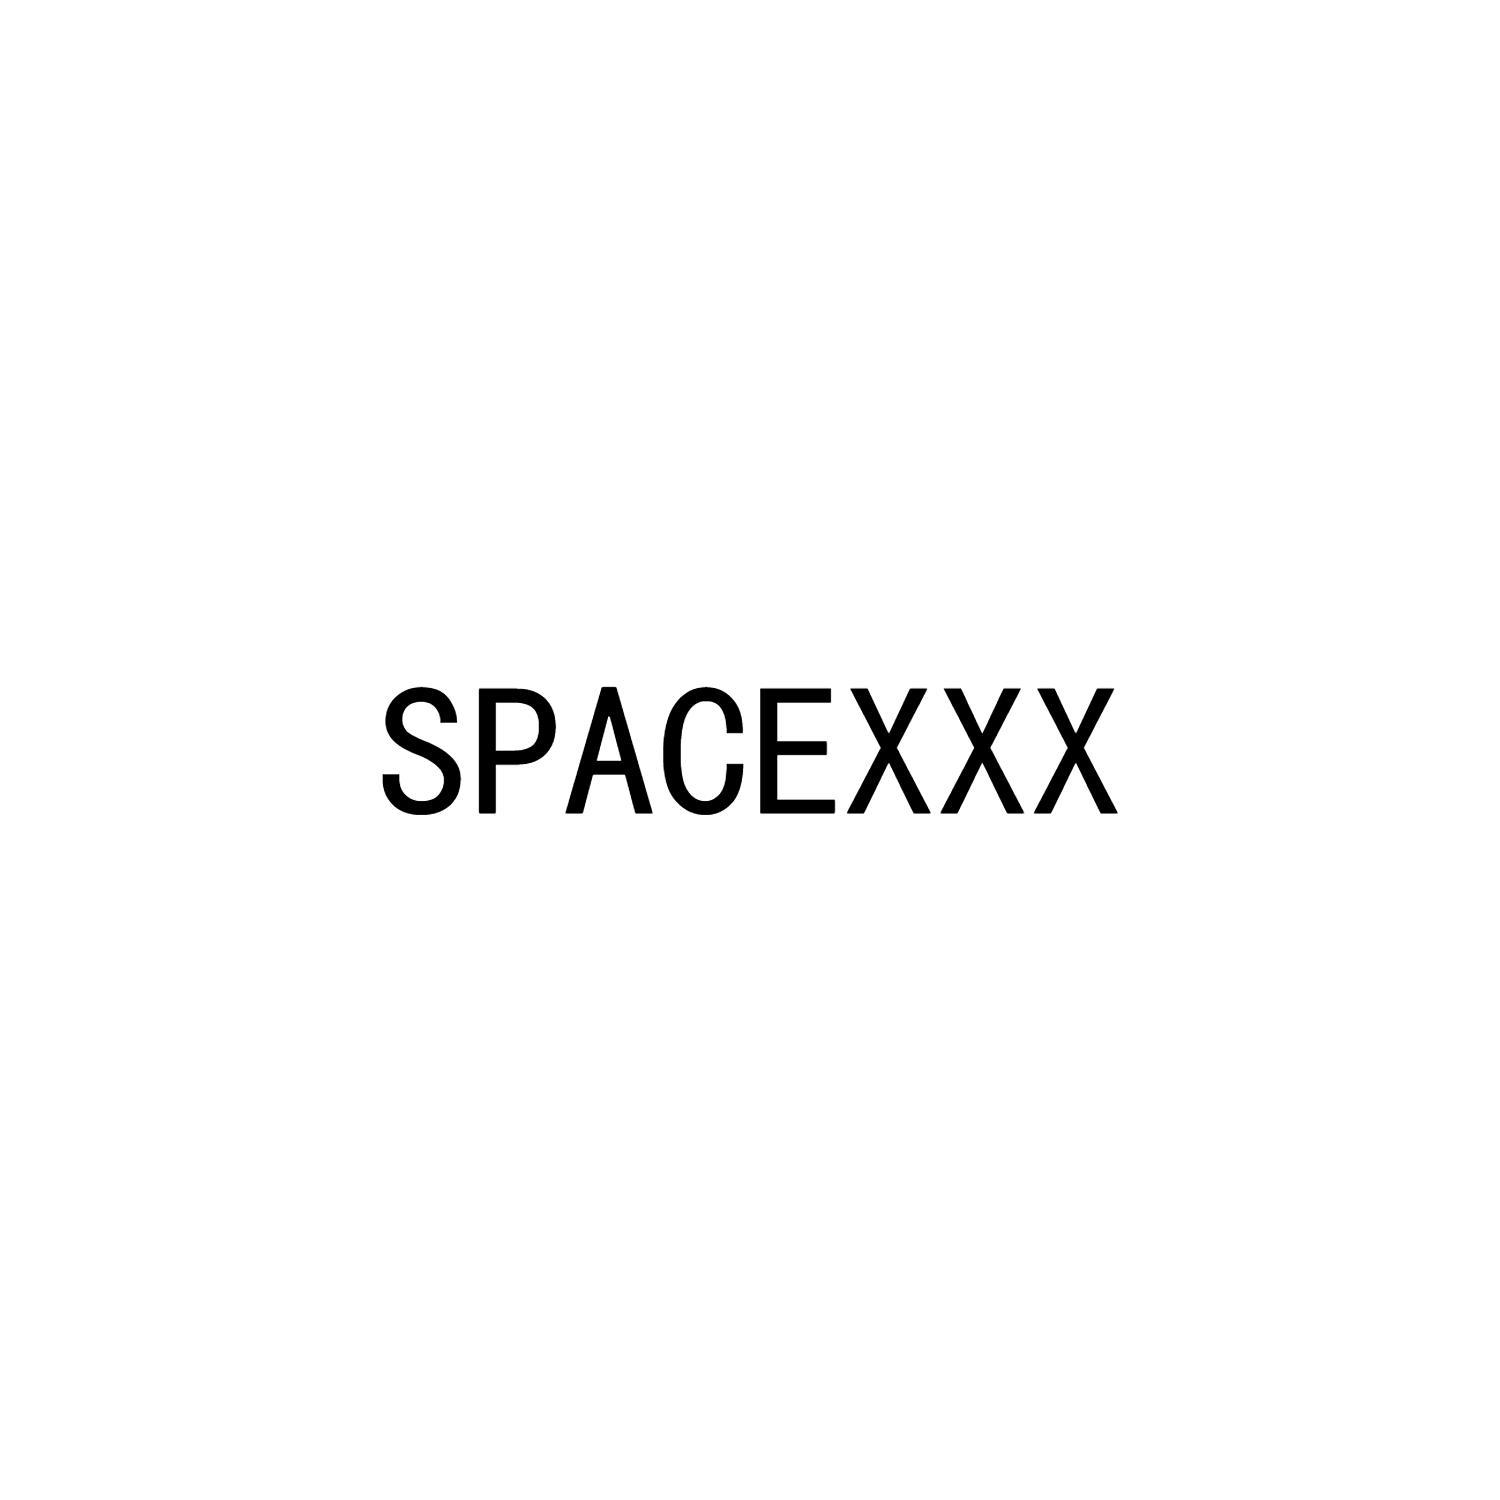 SPACEXXX